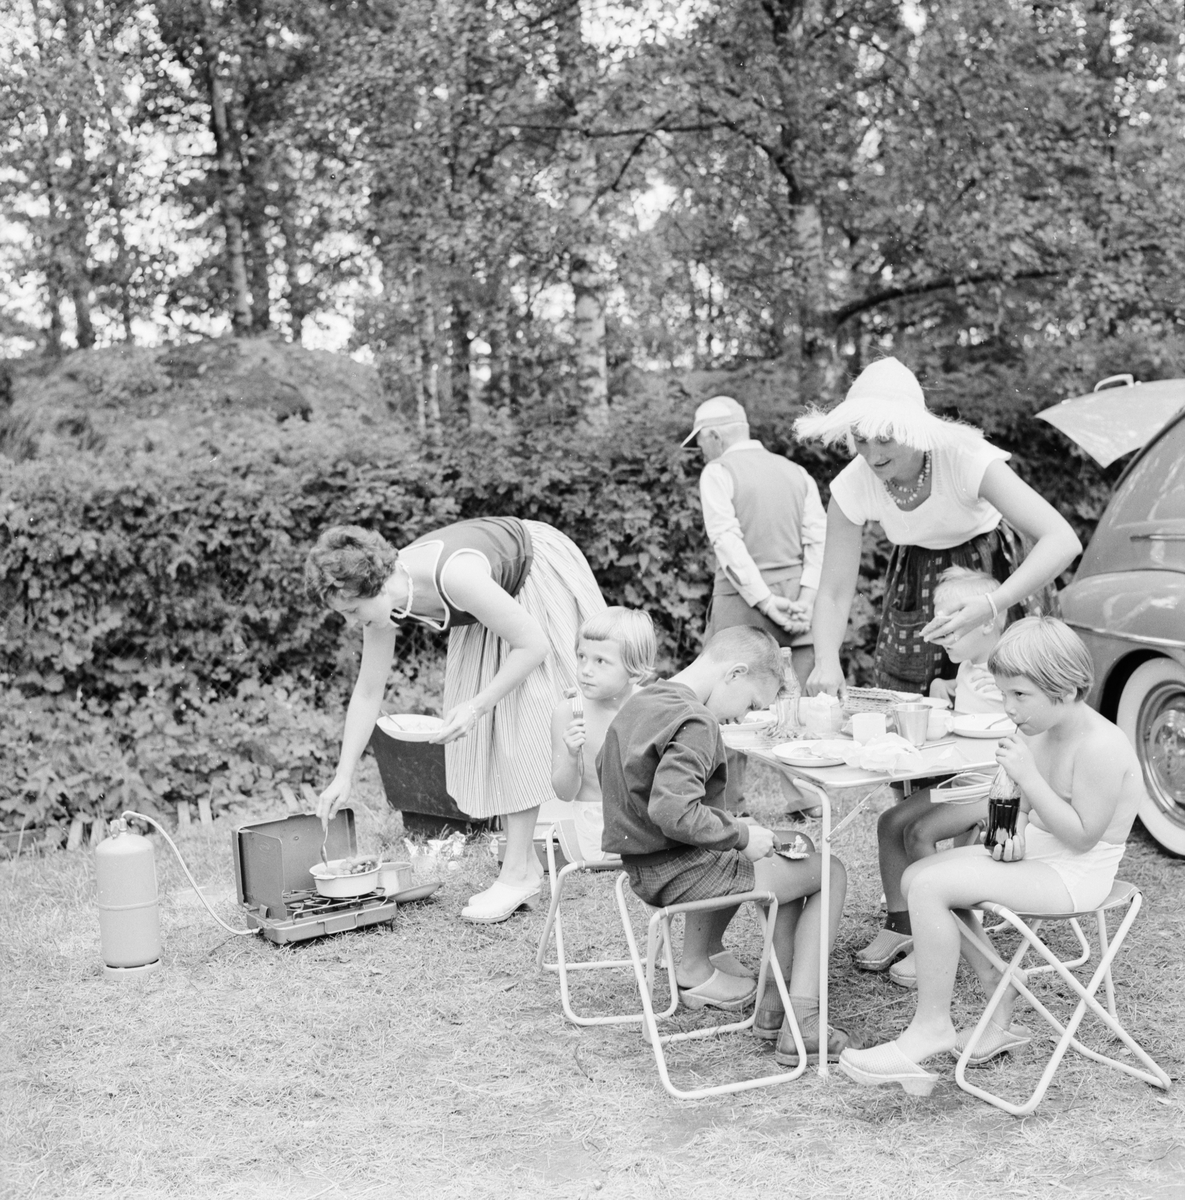 "Familjesemester i tält, julivärmen lockar många", Flottsund, Uppland juli 1961